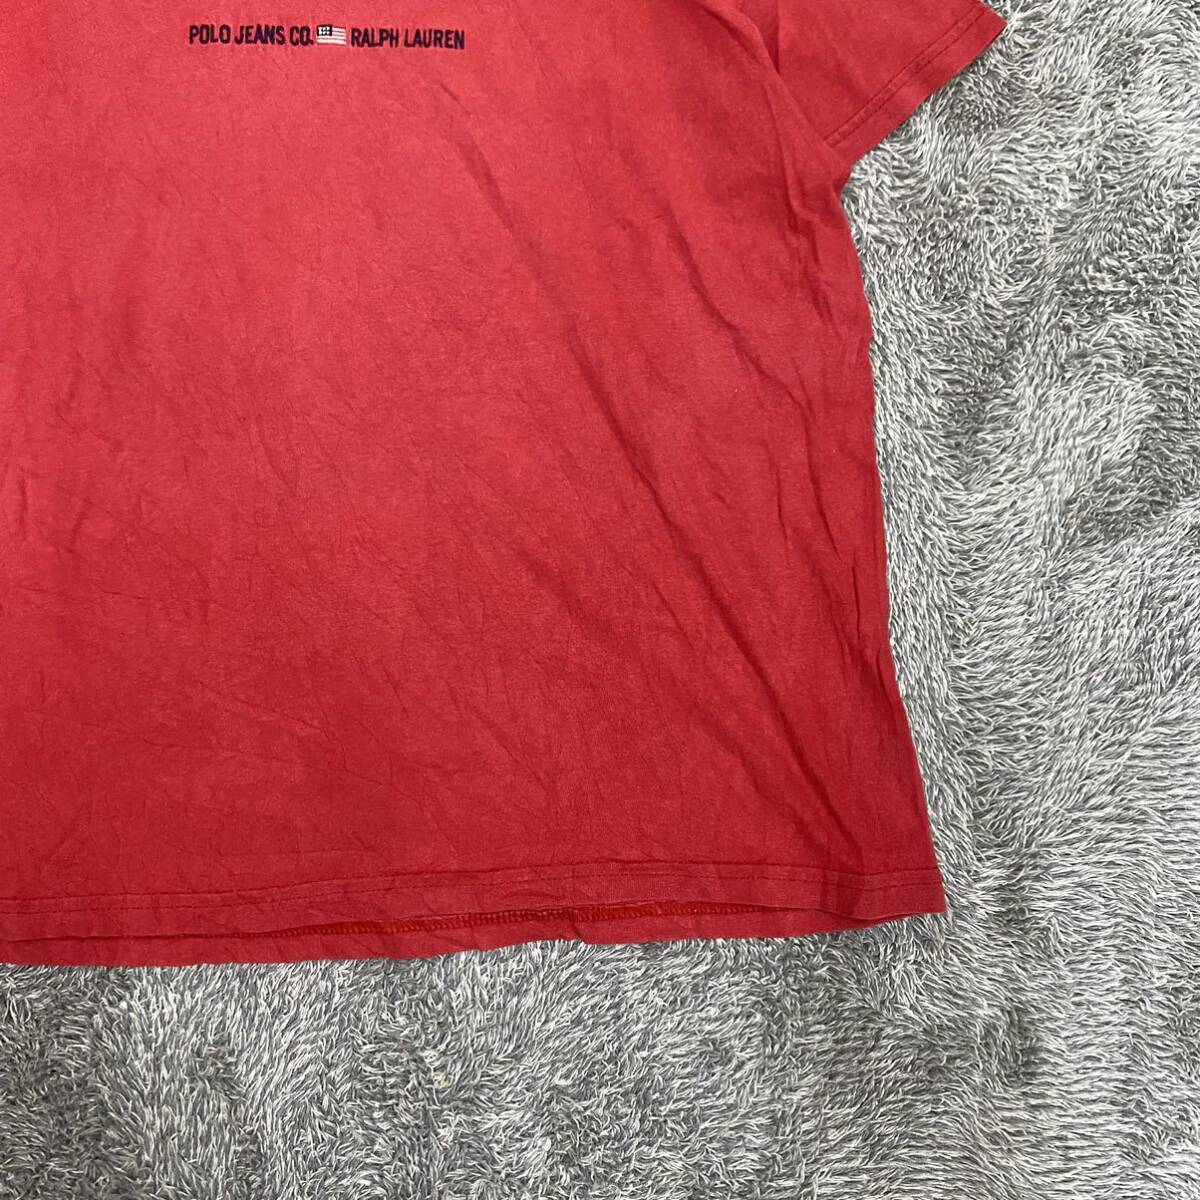 POLO JEANS ポロジーンズ RALPH LAUREN ラルフローレン Tシャツ 半袖カットソー サイズL レッド 赤 レディース トップス 最落なし （B19）の画像5